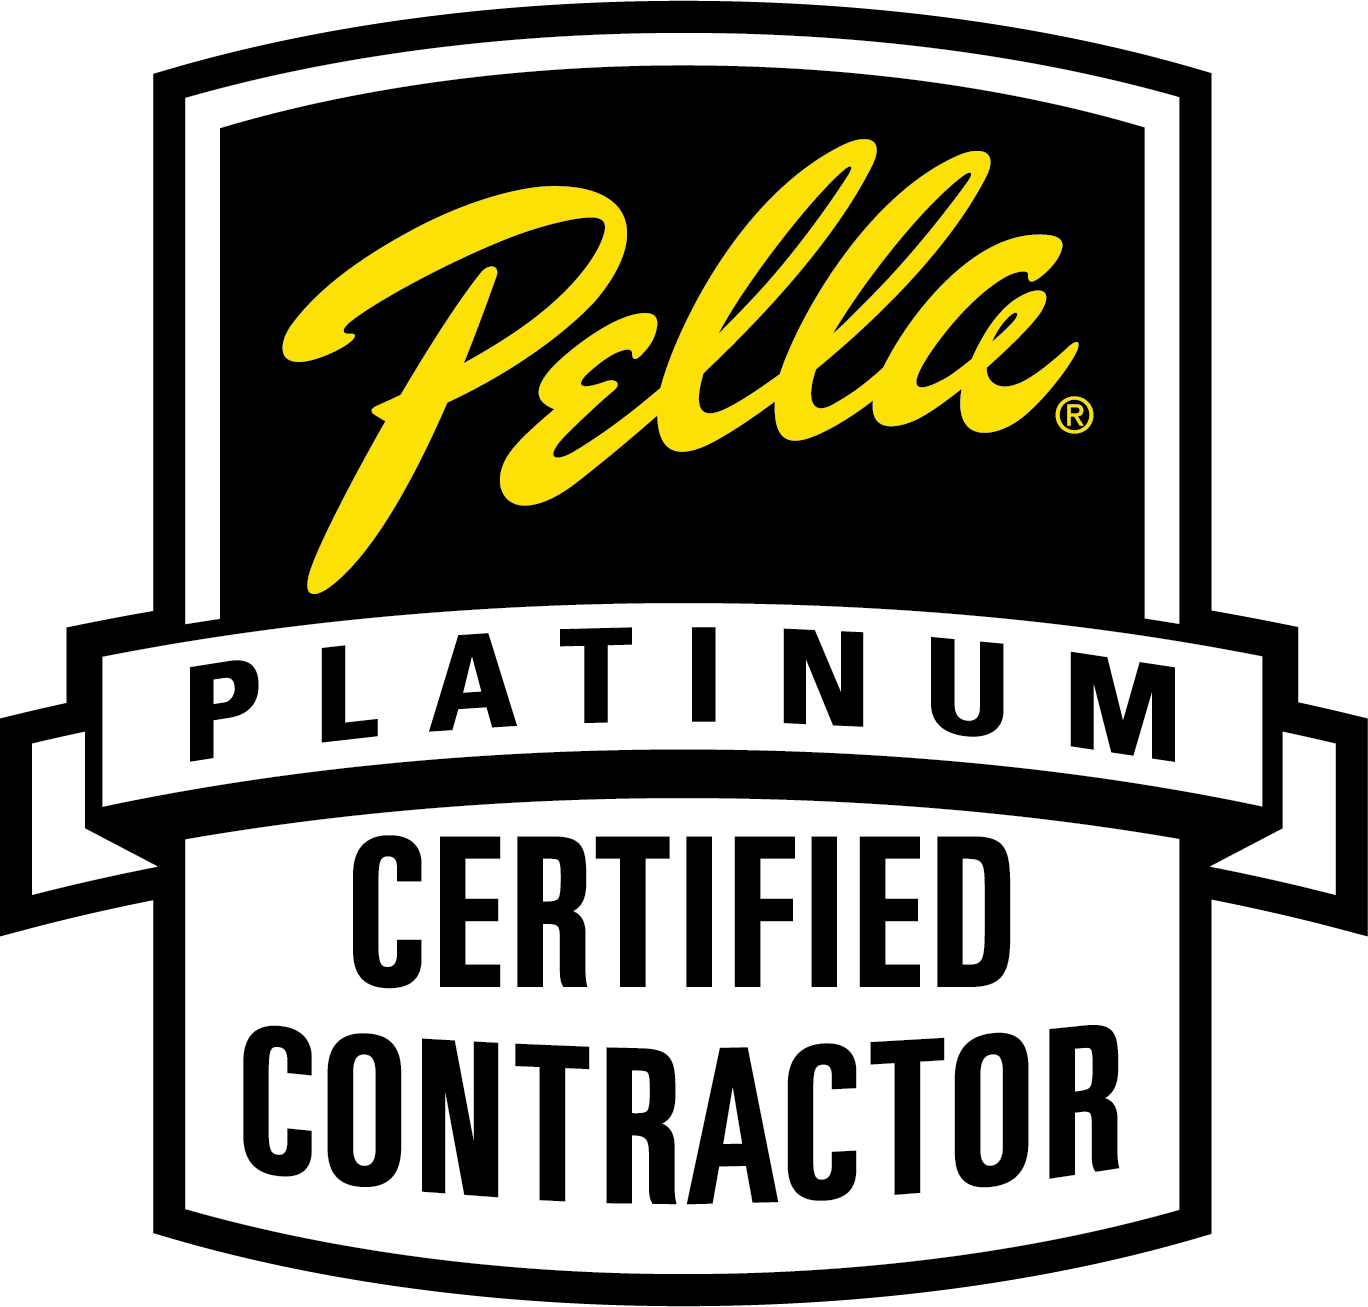 Pella Platinum Certified Contractor Logo